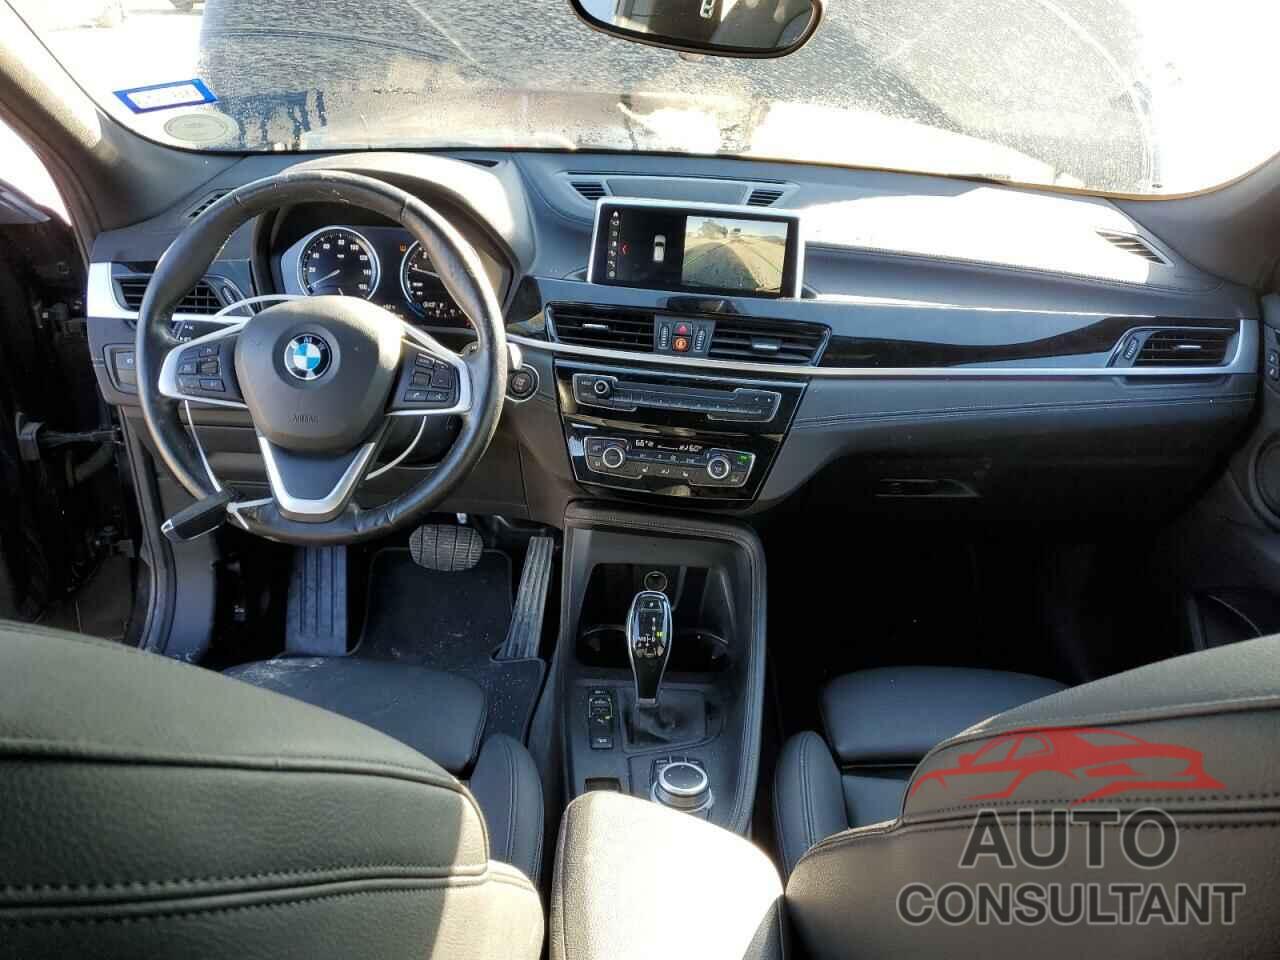 BMW X2 2020 - WBXYJ1C0XL5P61498